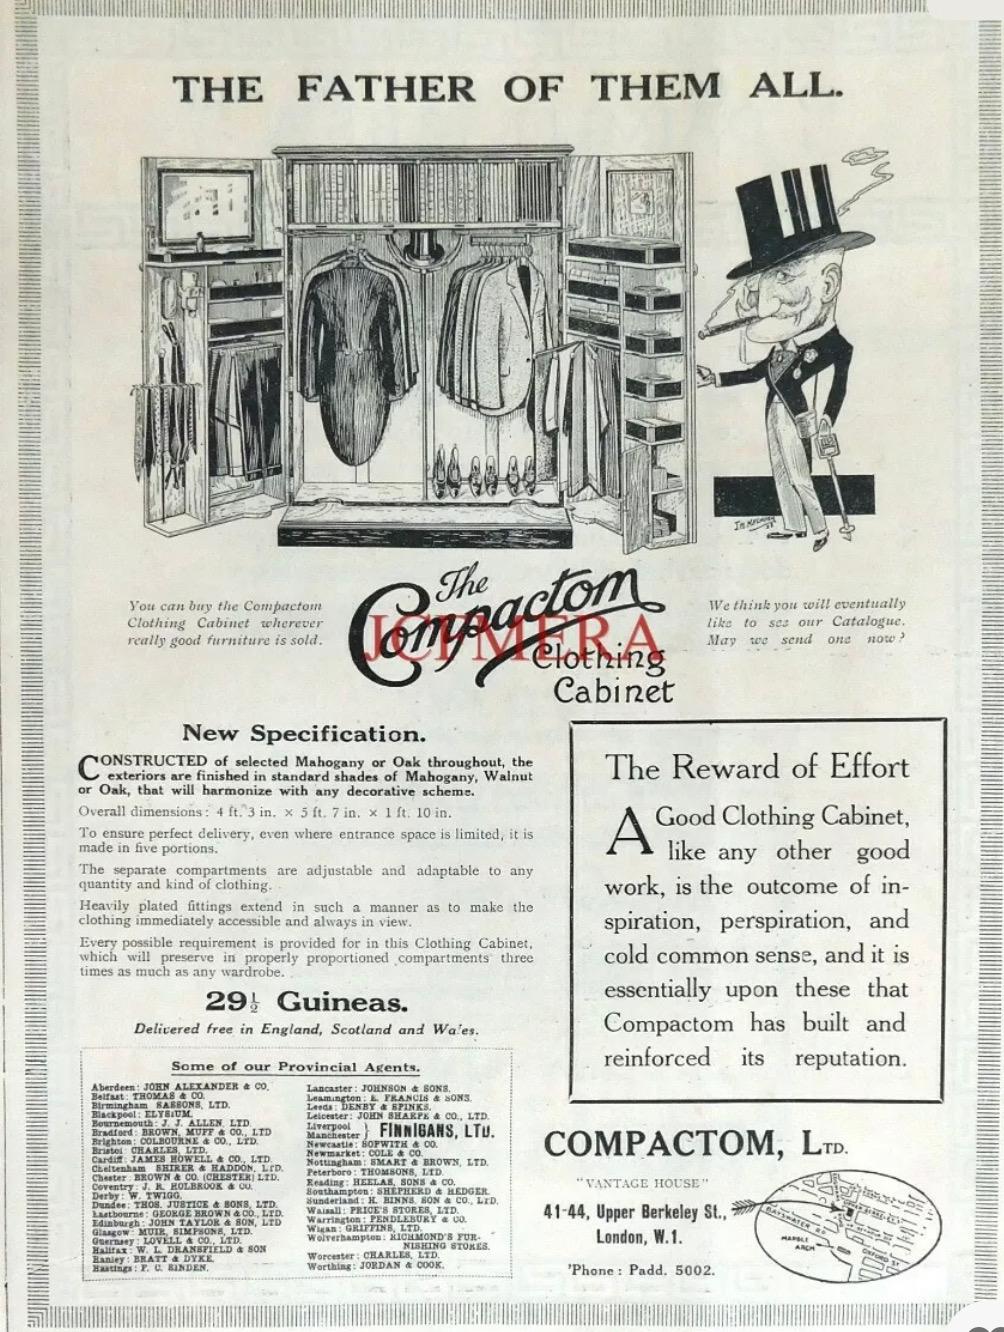 Original Art Deco Compactum Wardrobe by Compactom 2